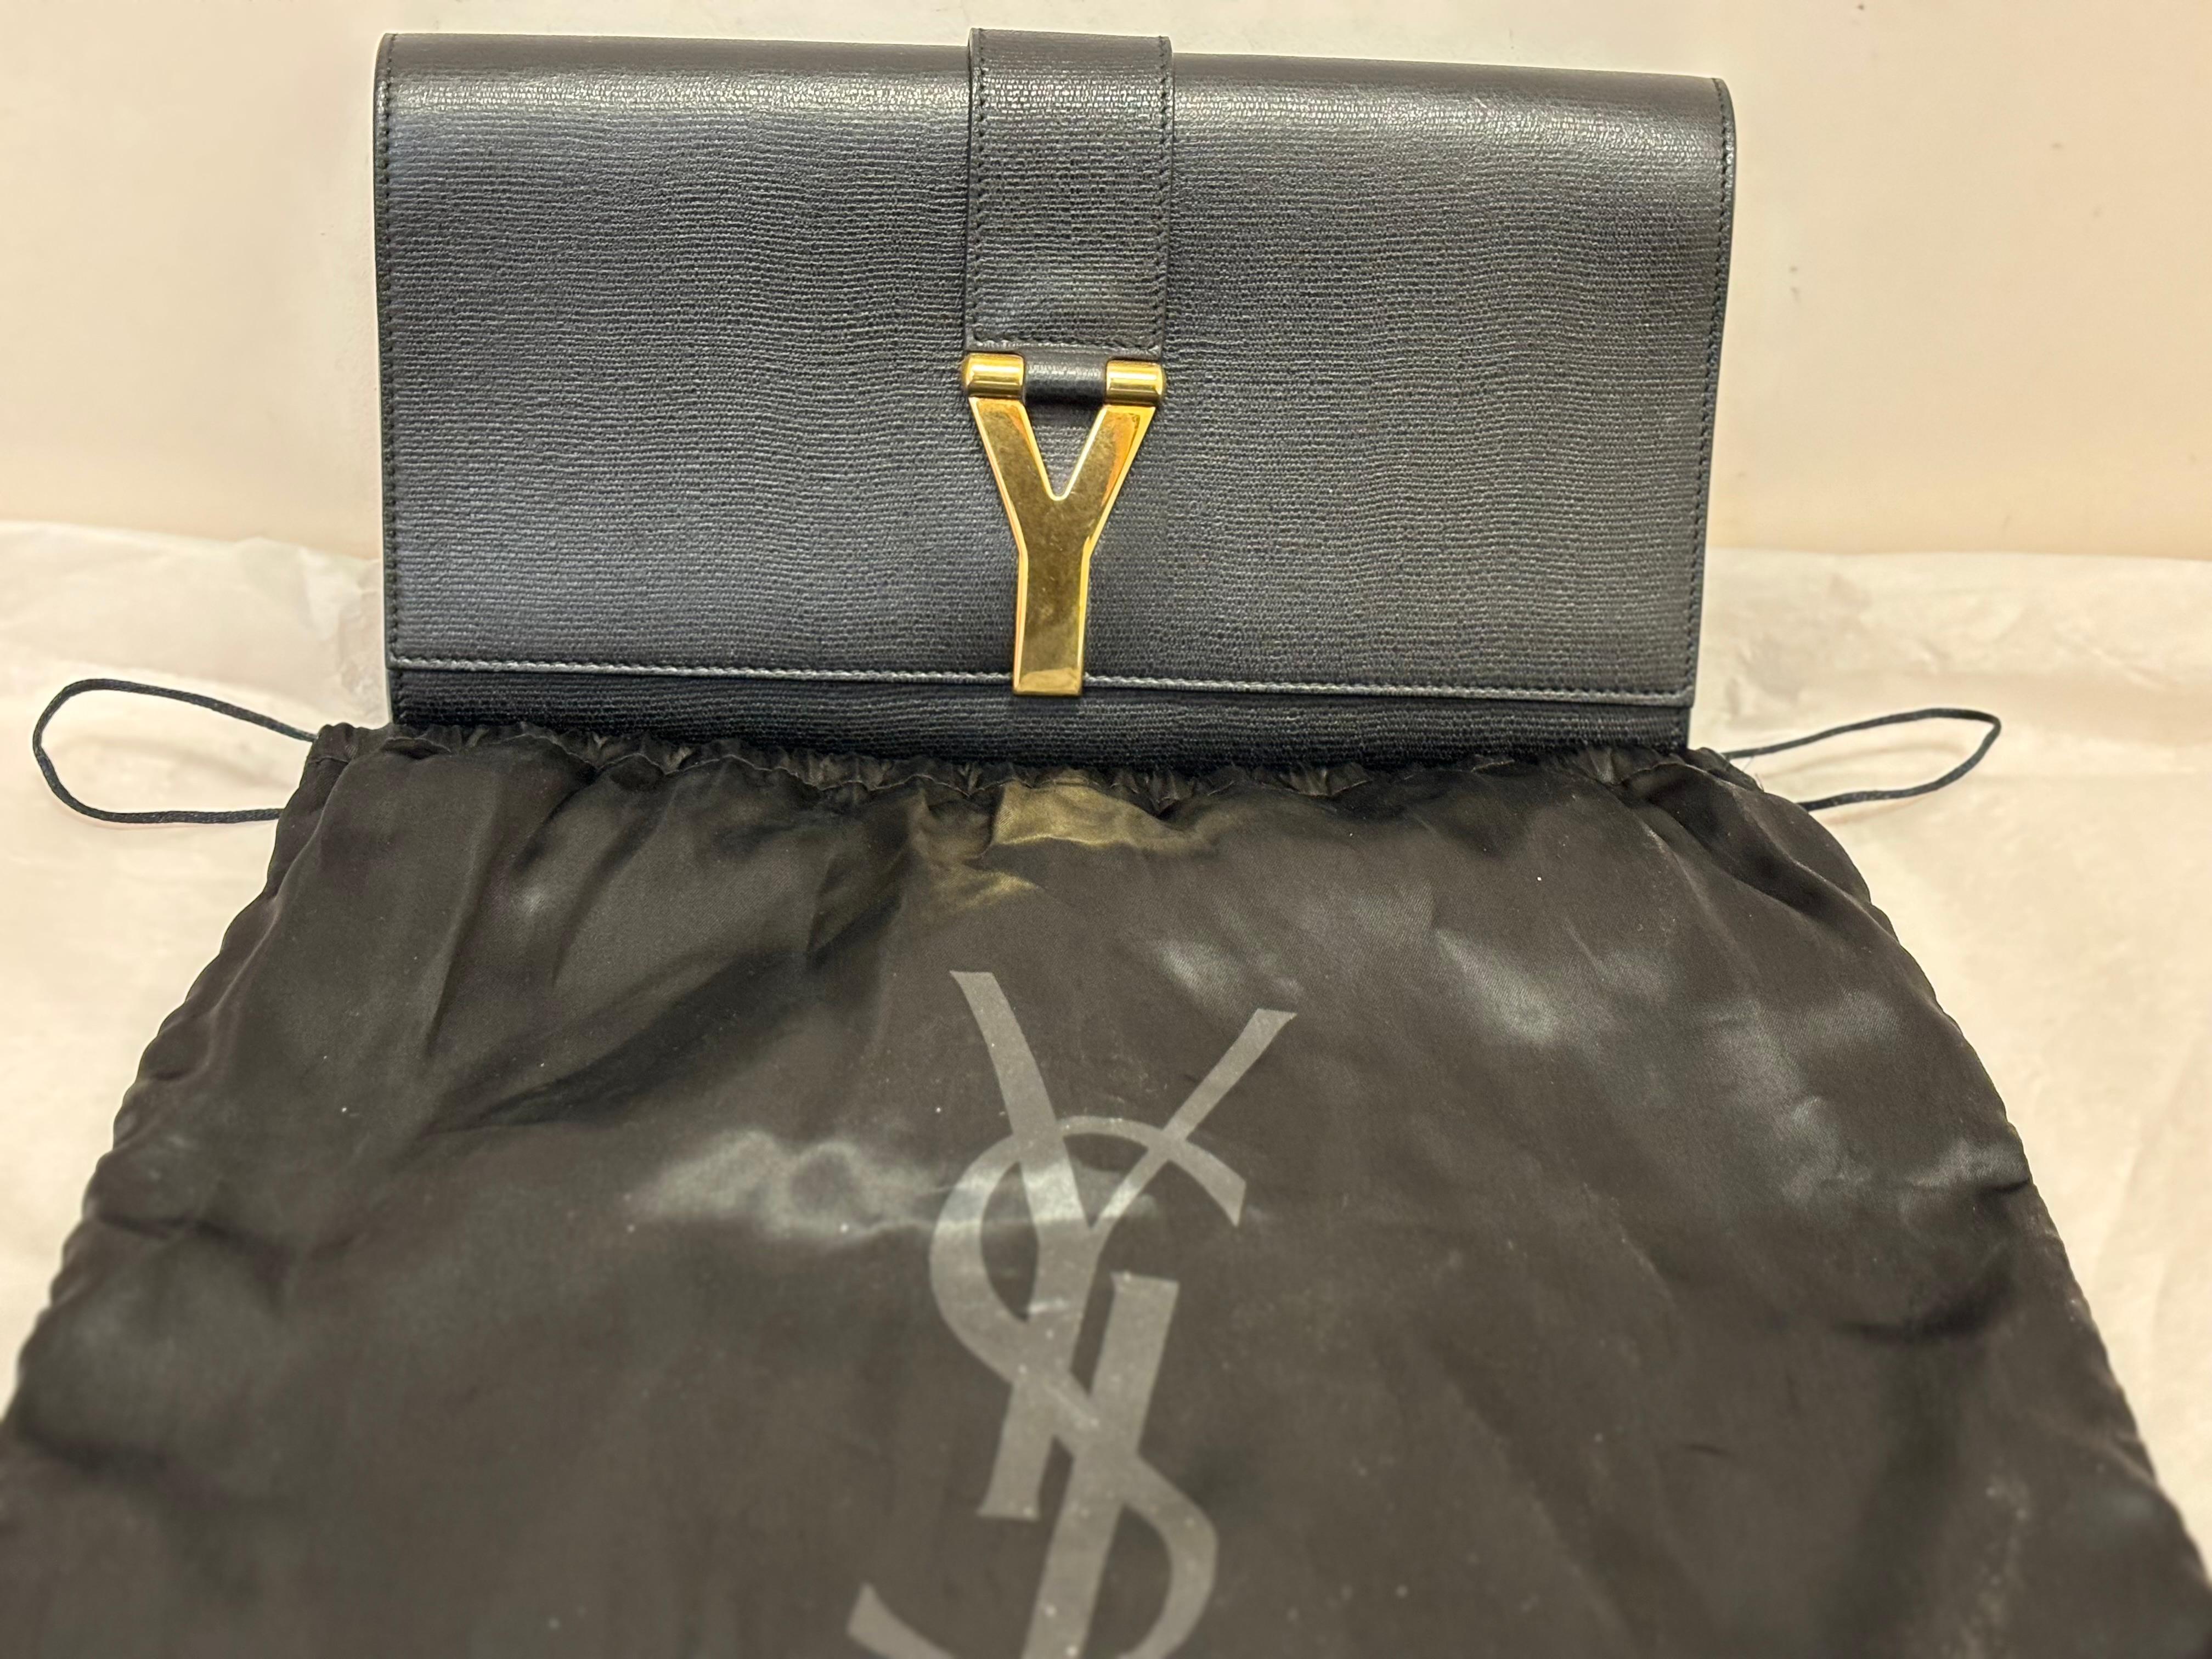 Typische YSL-Tasche, einfache Linien und gedämpfte Raffinesse. Diese YSL Y Ligne Clutch wurde von Tom Ford entworfen und ist aus strukturiertem Leder gefertigt.
Diese Clutch hat eine magnetische Frontklappe mit einem goldfarbenen Y. Das Innere ist